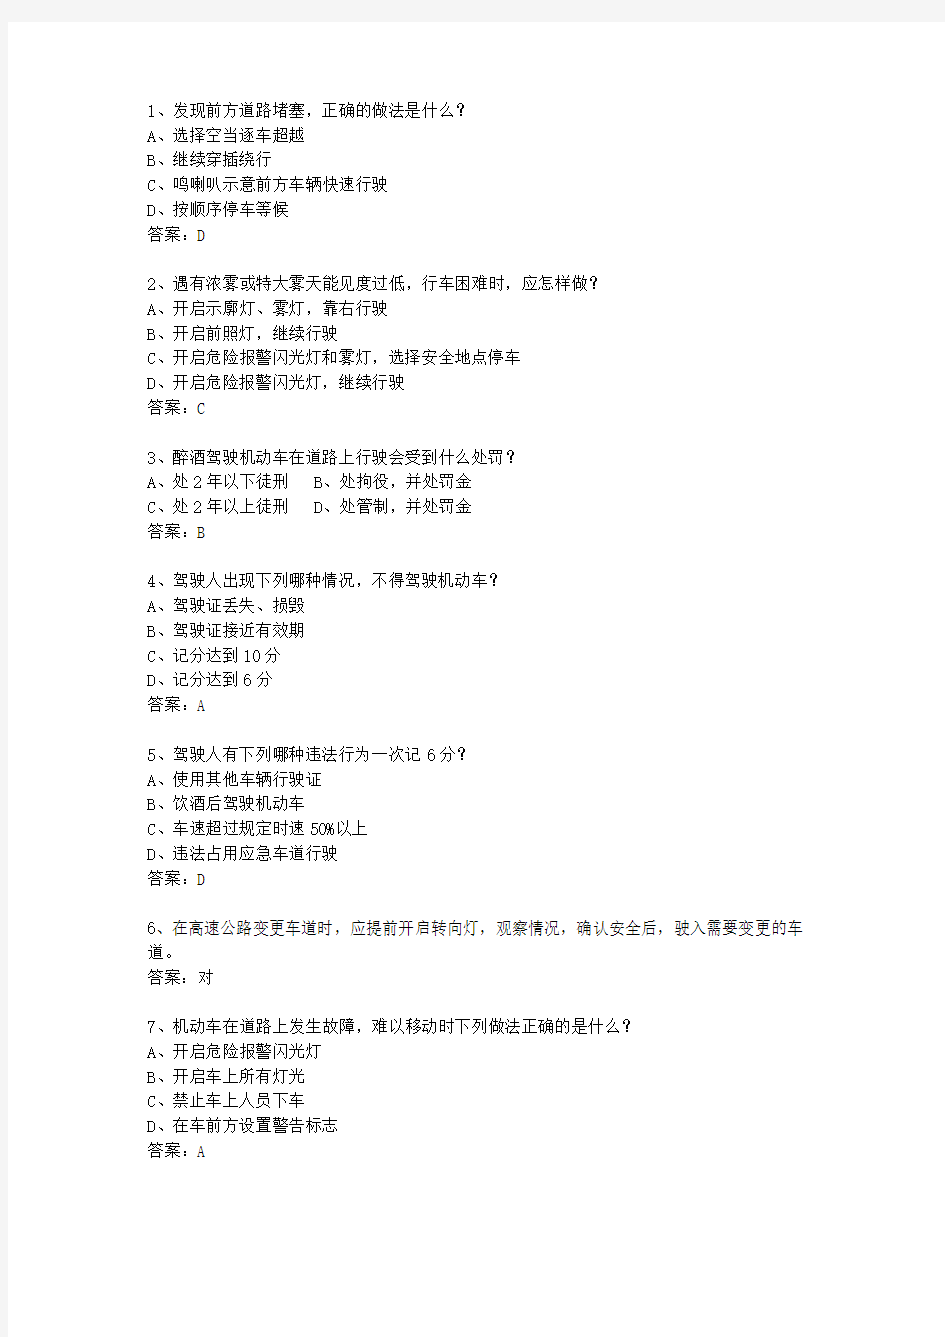 2013河南省驾校考试科目一自动档考试技巧、答题原则